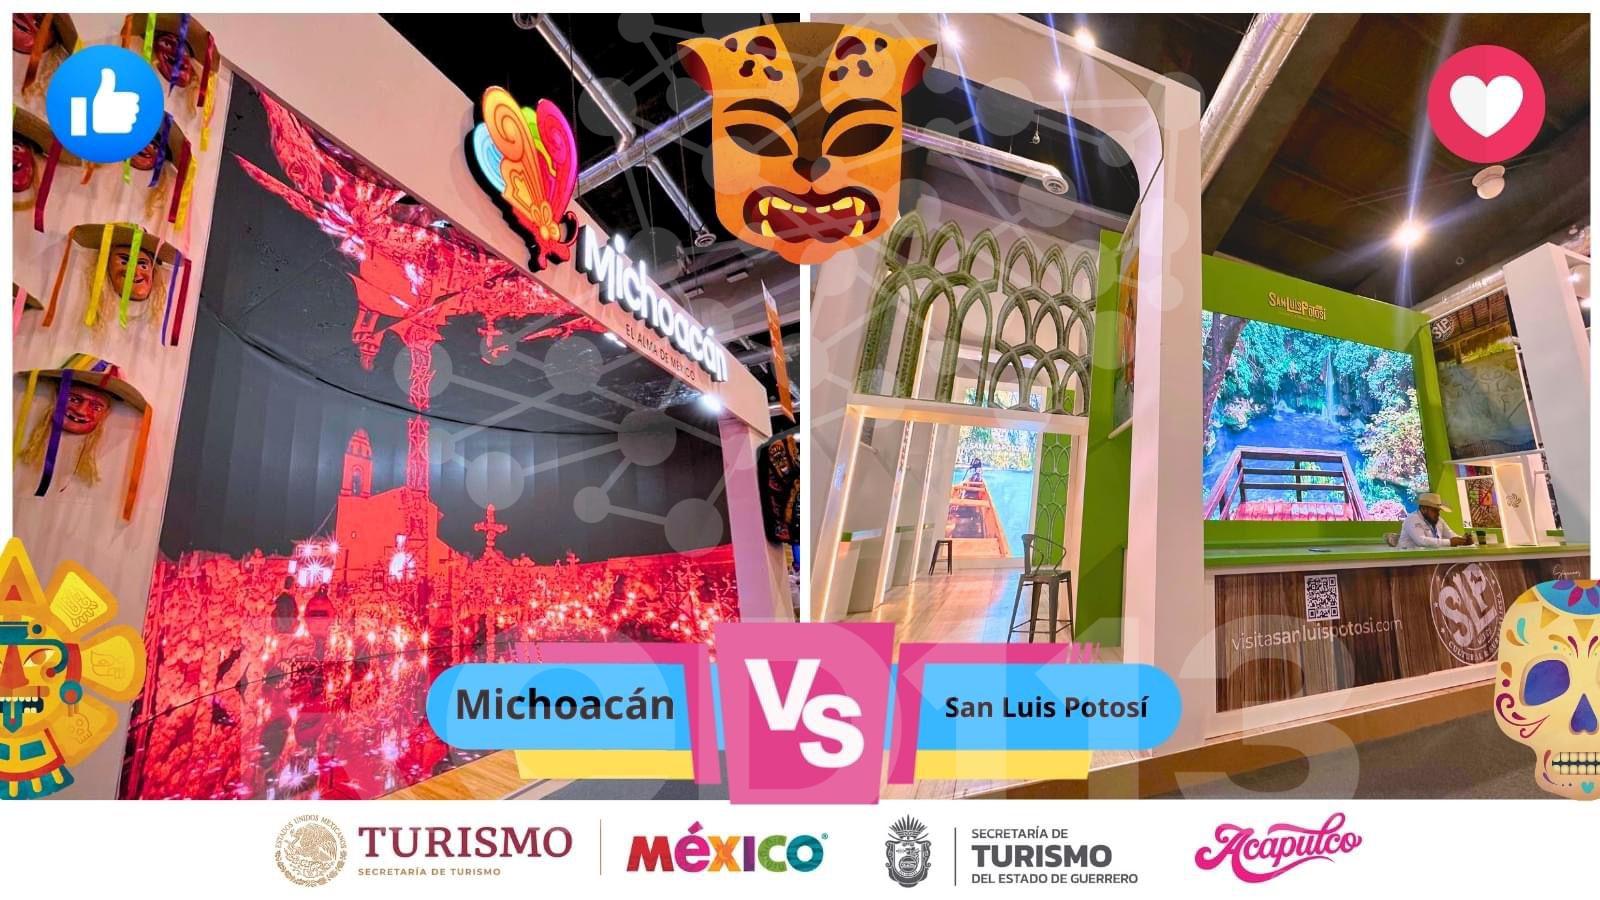 Michoacán compite a mejor estand del Tianguis Turístico; súmate y vota